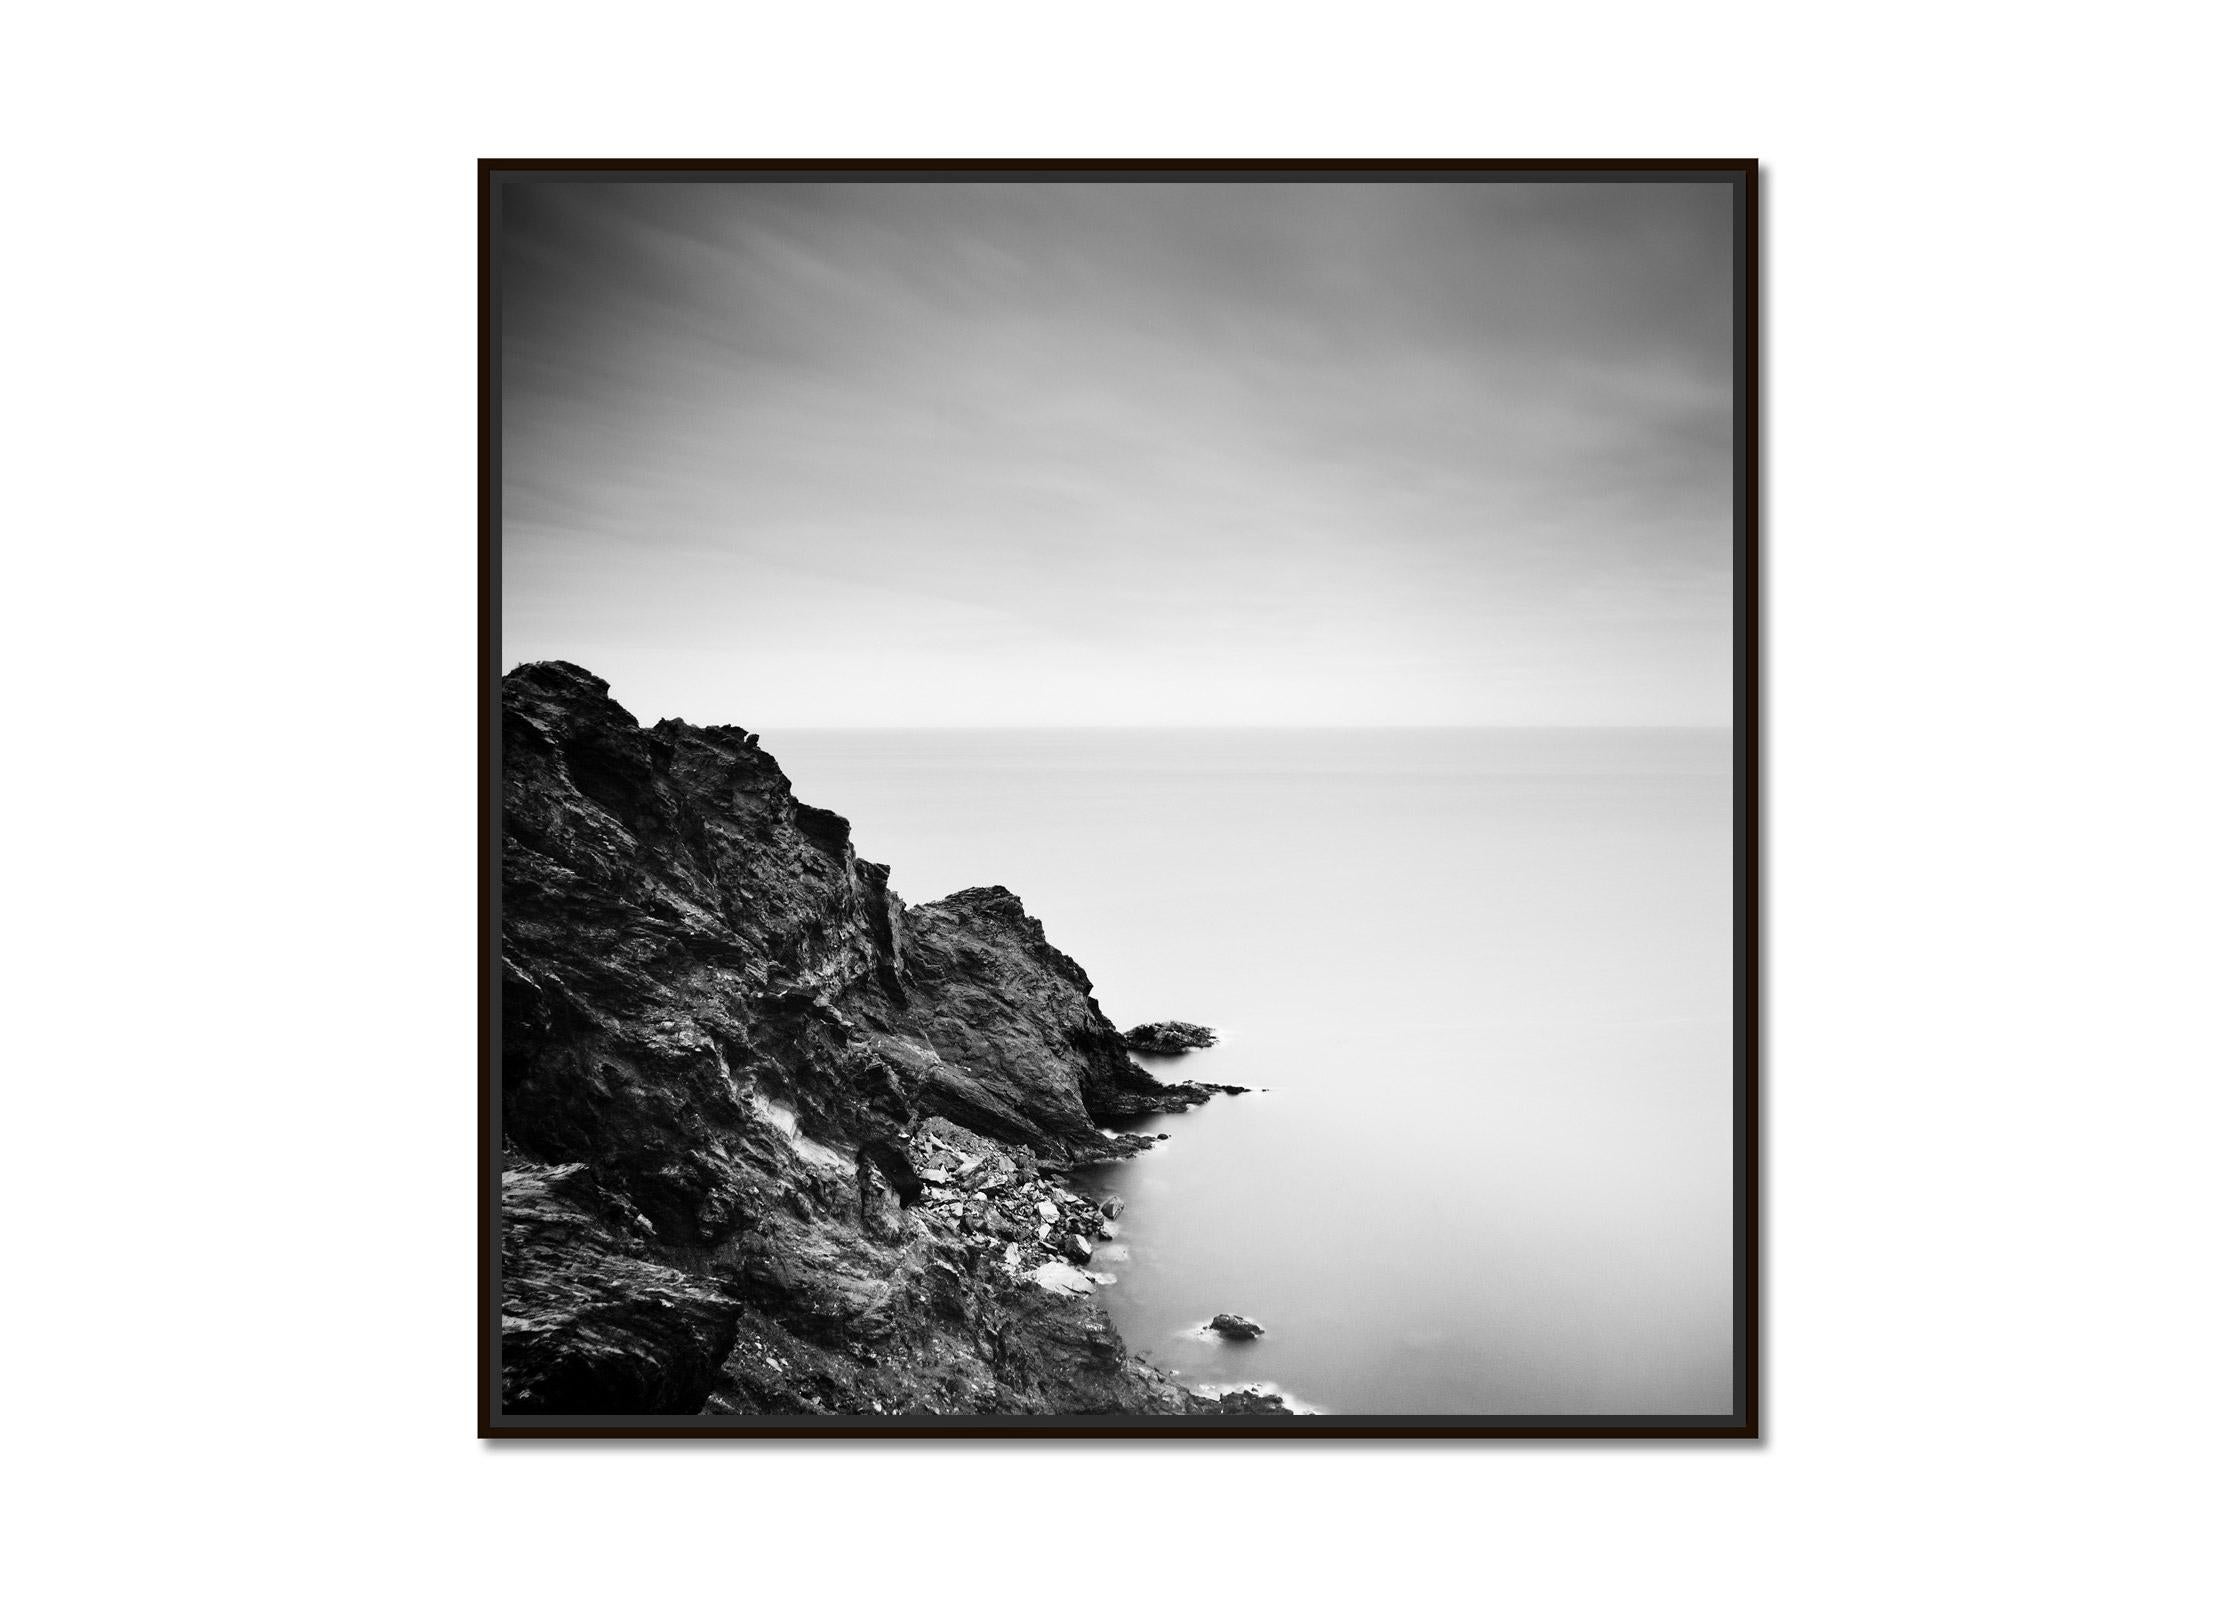 Atlantic Coast, Cliff, Portugal, Schwarz-Weiß-Fotografie, Kunstlandschaft – Photograph von Gerald Berghammer, Ina Forstinger